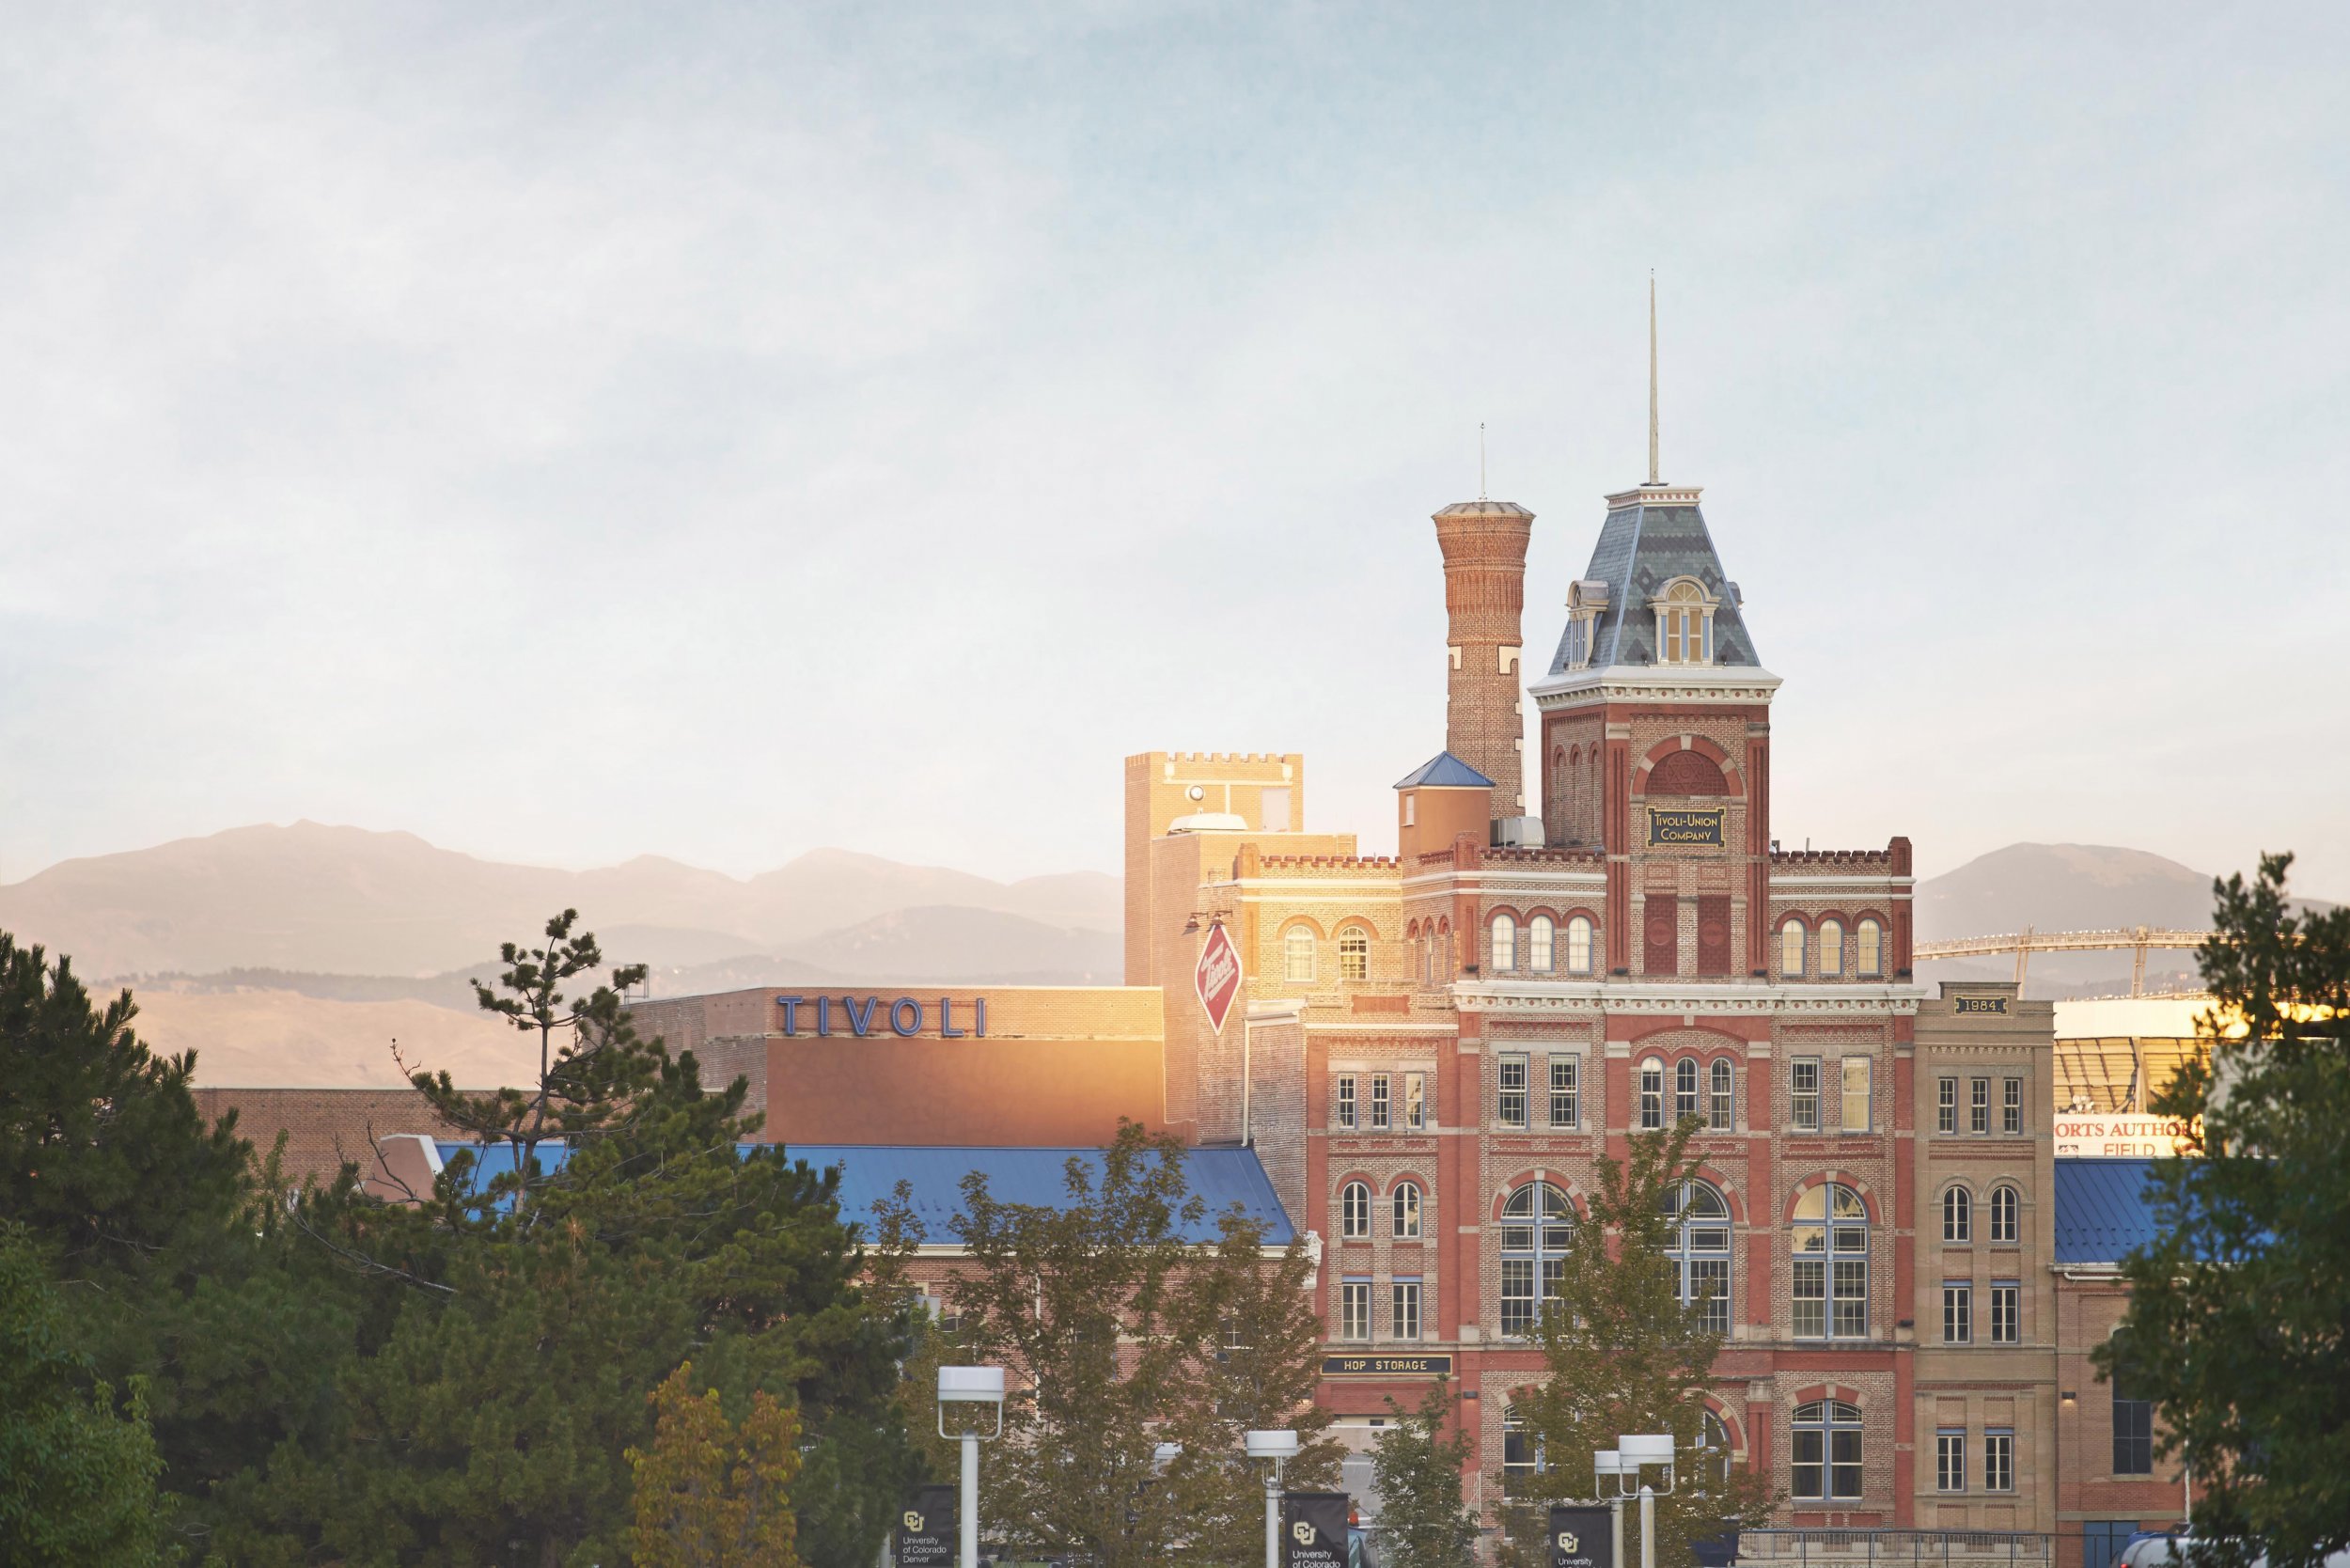 University Of Colorado Denver 276